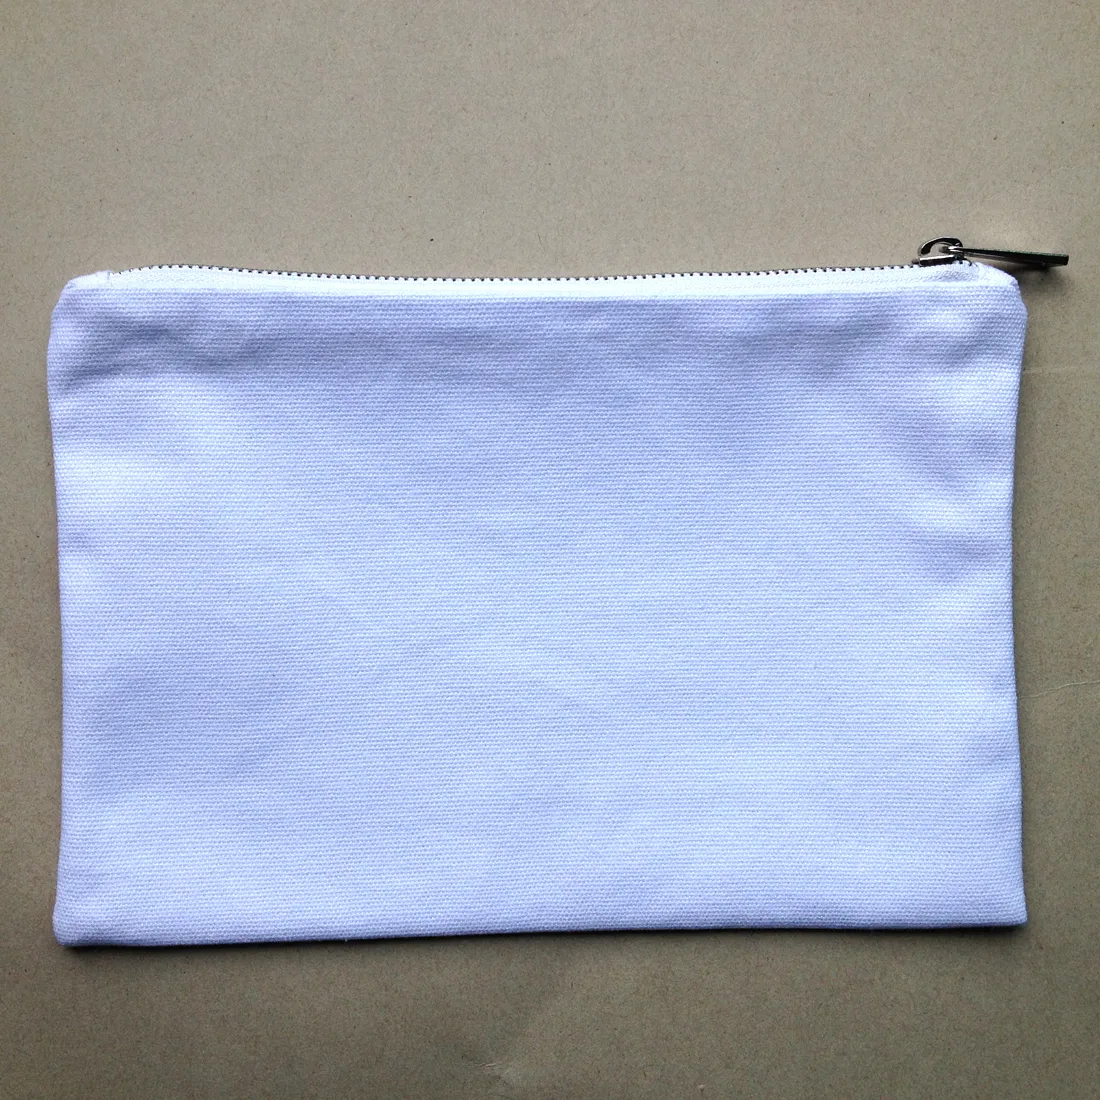 preto / branco de algodão bolsa de maquiagem lona 12 onças de ouro zip / prata e combinando a cor do forro bolsa de higiene sacos de cosméticos em branco